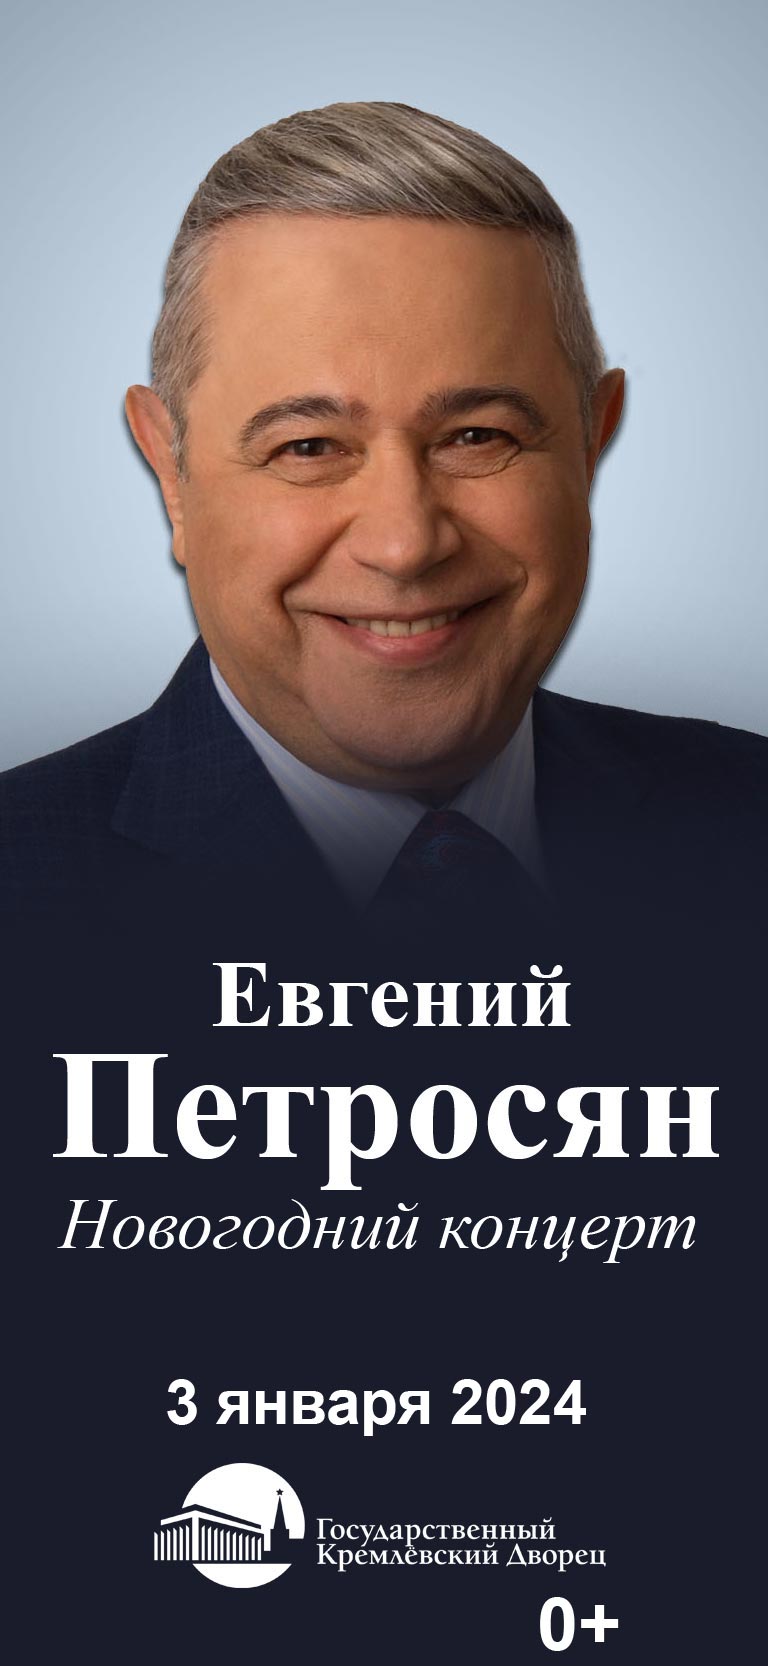 Купить Билеты на Новогодний концерт Евгения Петросяна 2024 в Государственном Кремлевском Дворце